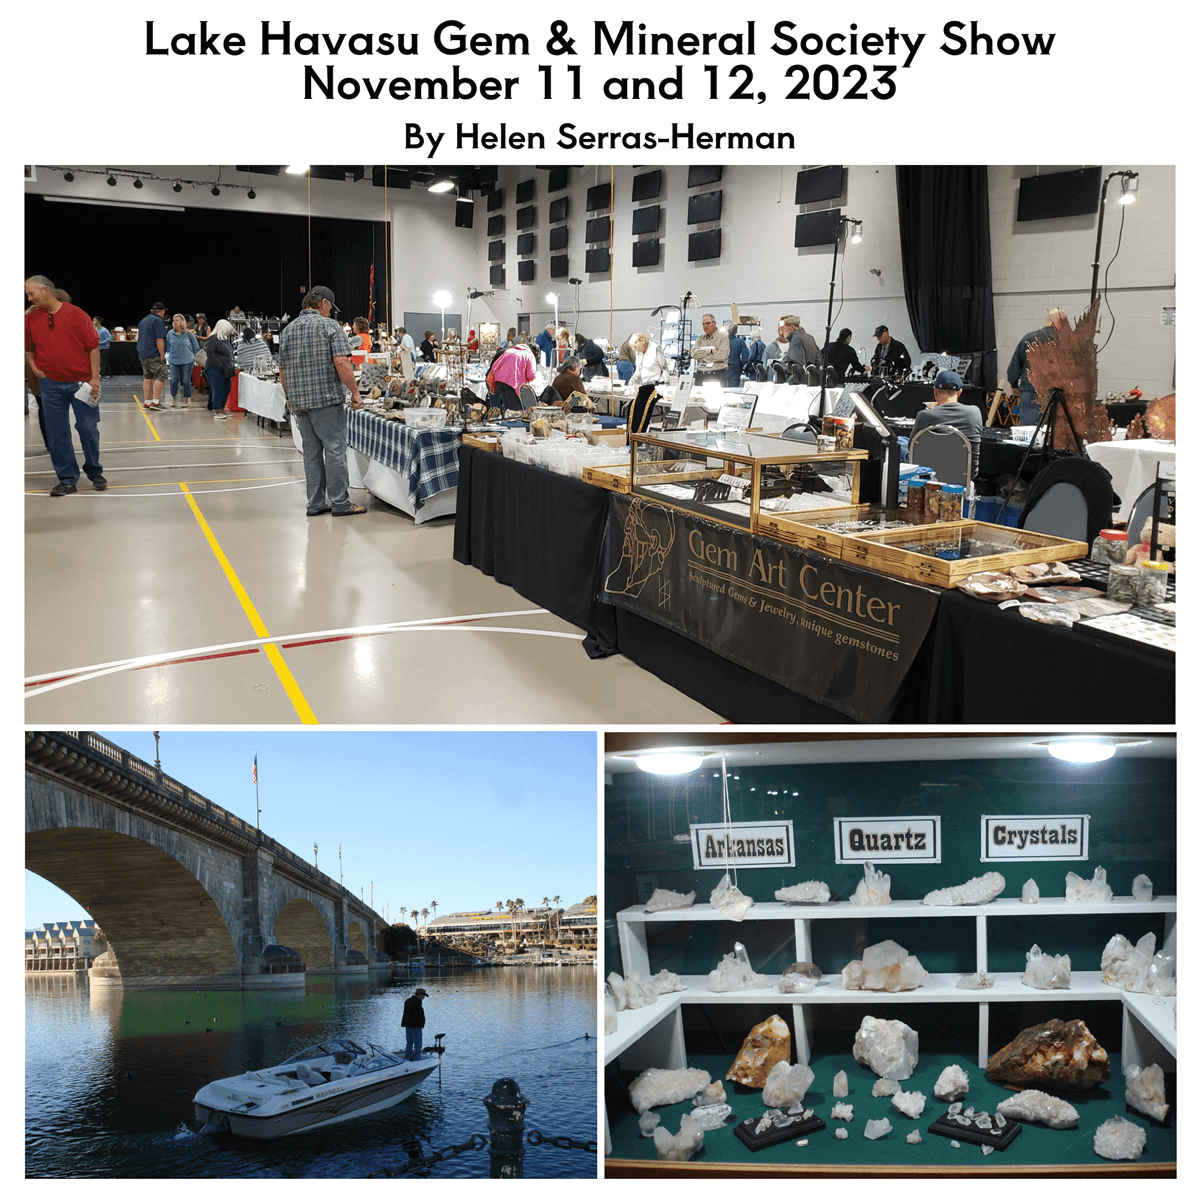 Lake Havasu Gem & Mineral Society Show